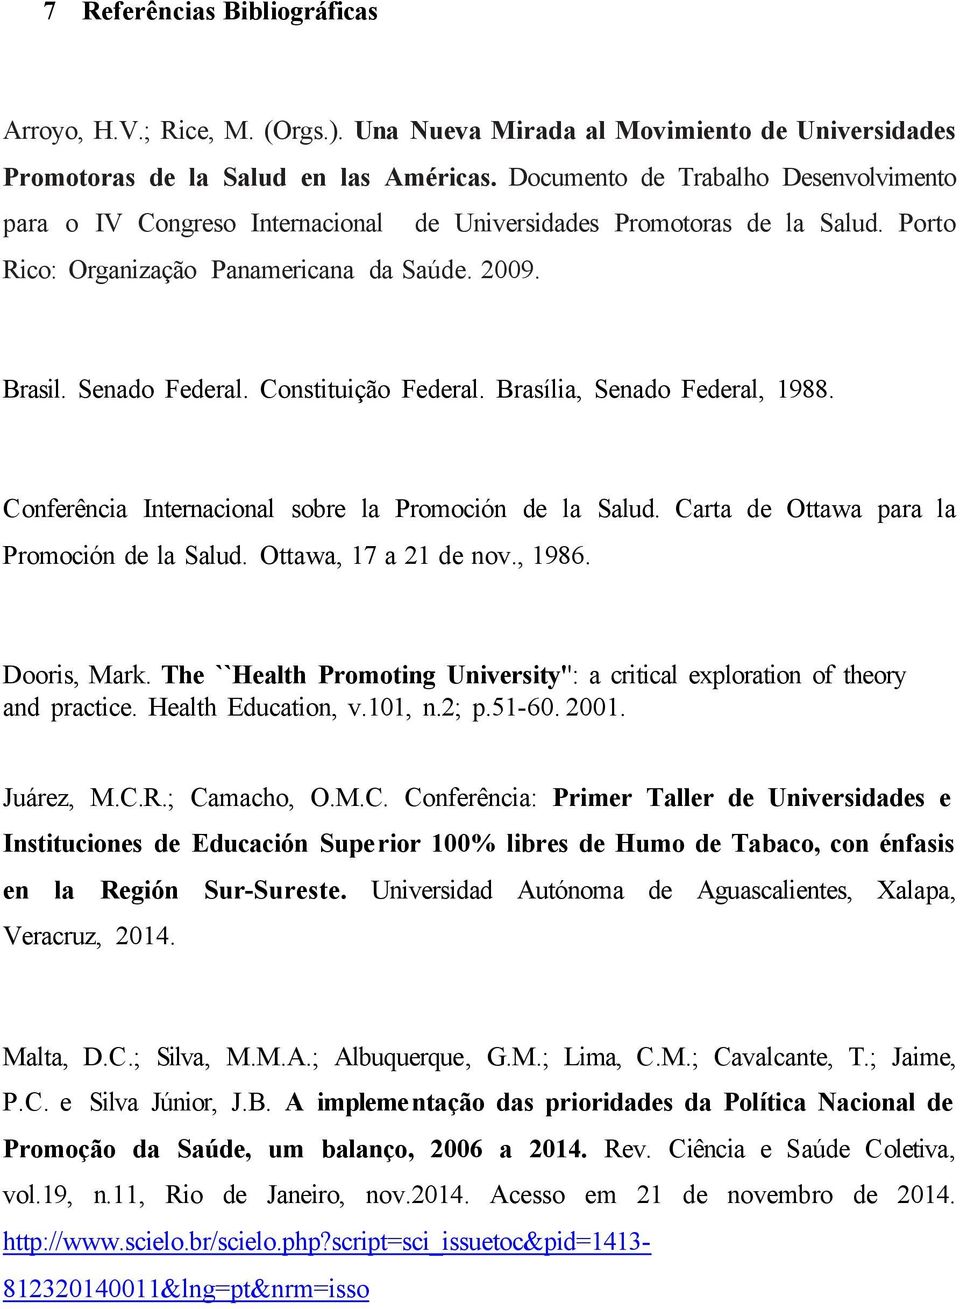 Constituição Federal. Brasília, Senado Federal, 1988. Conferência Internacional sobre la Promoción de la Salud. Carta de Ottawa para la Promoción de la Salud. Ottawa, 17 a 21 de nov., 1986.